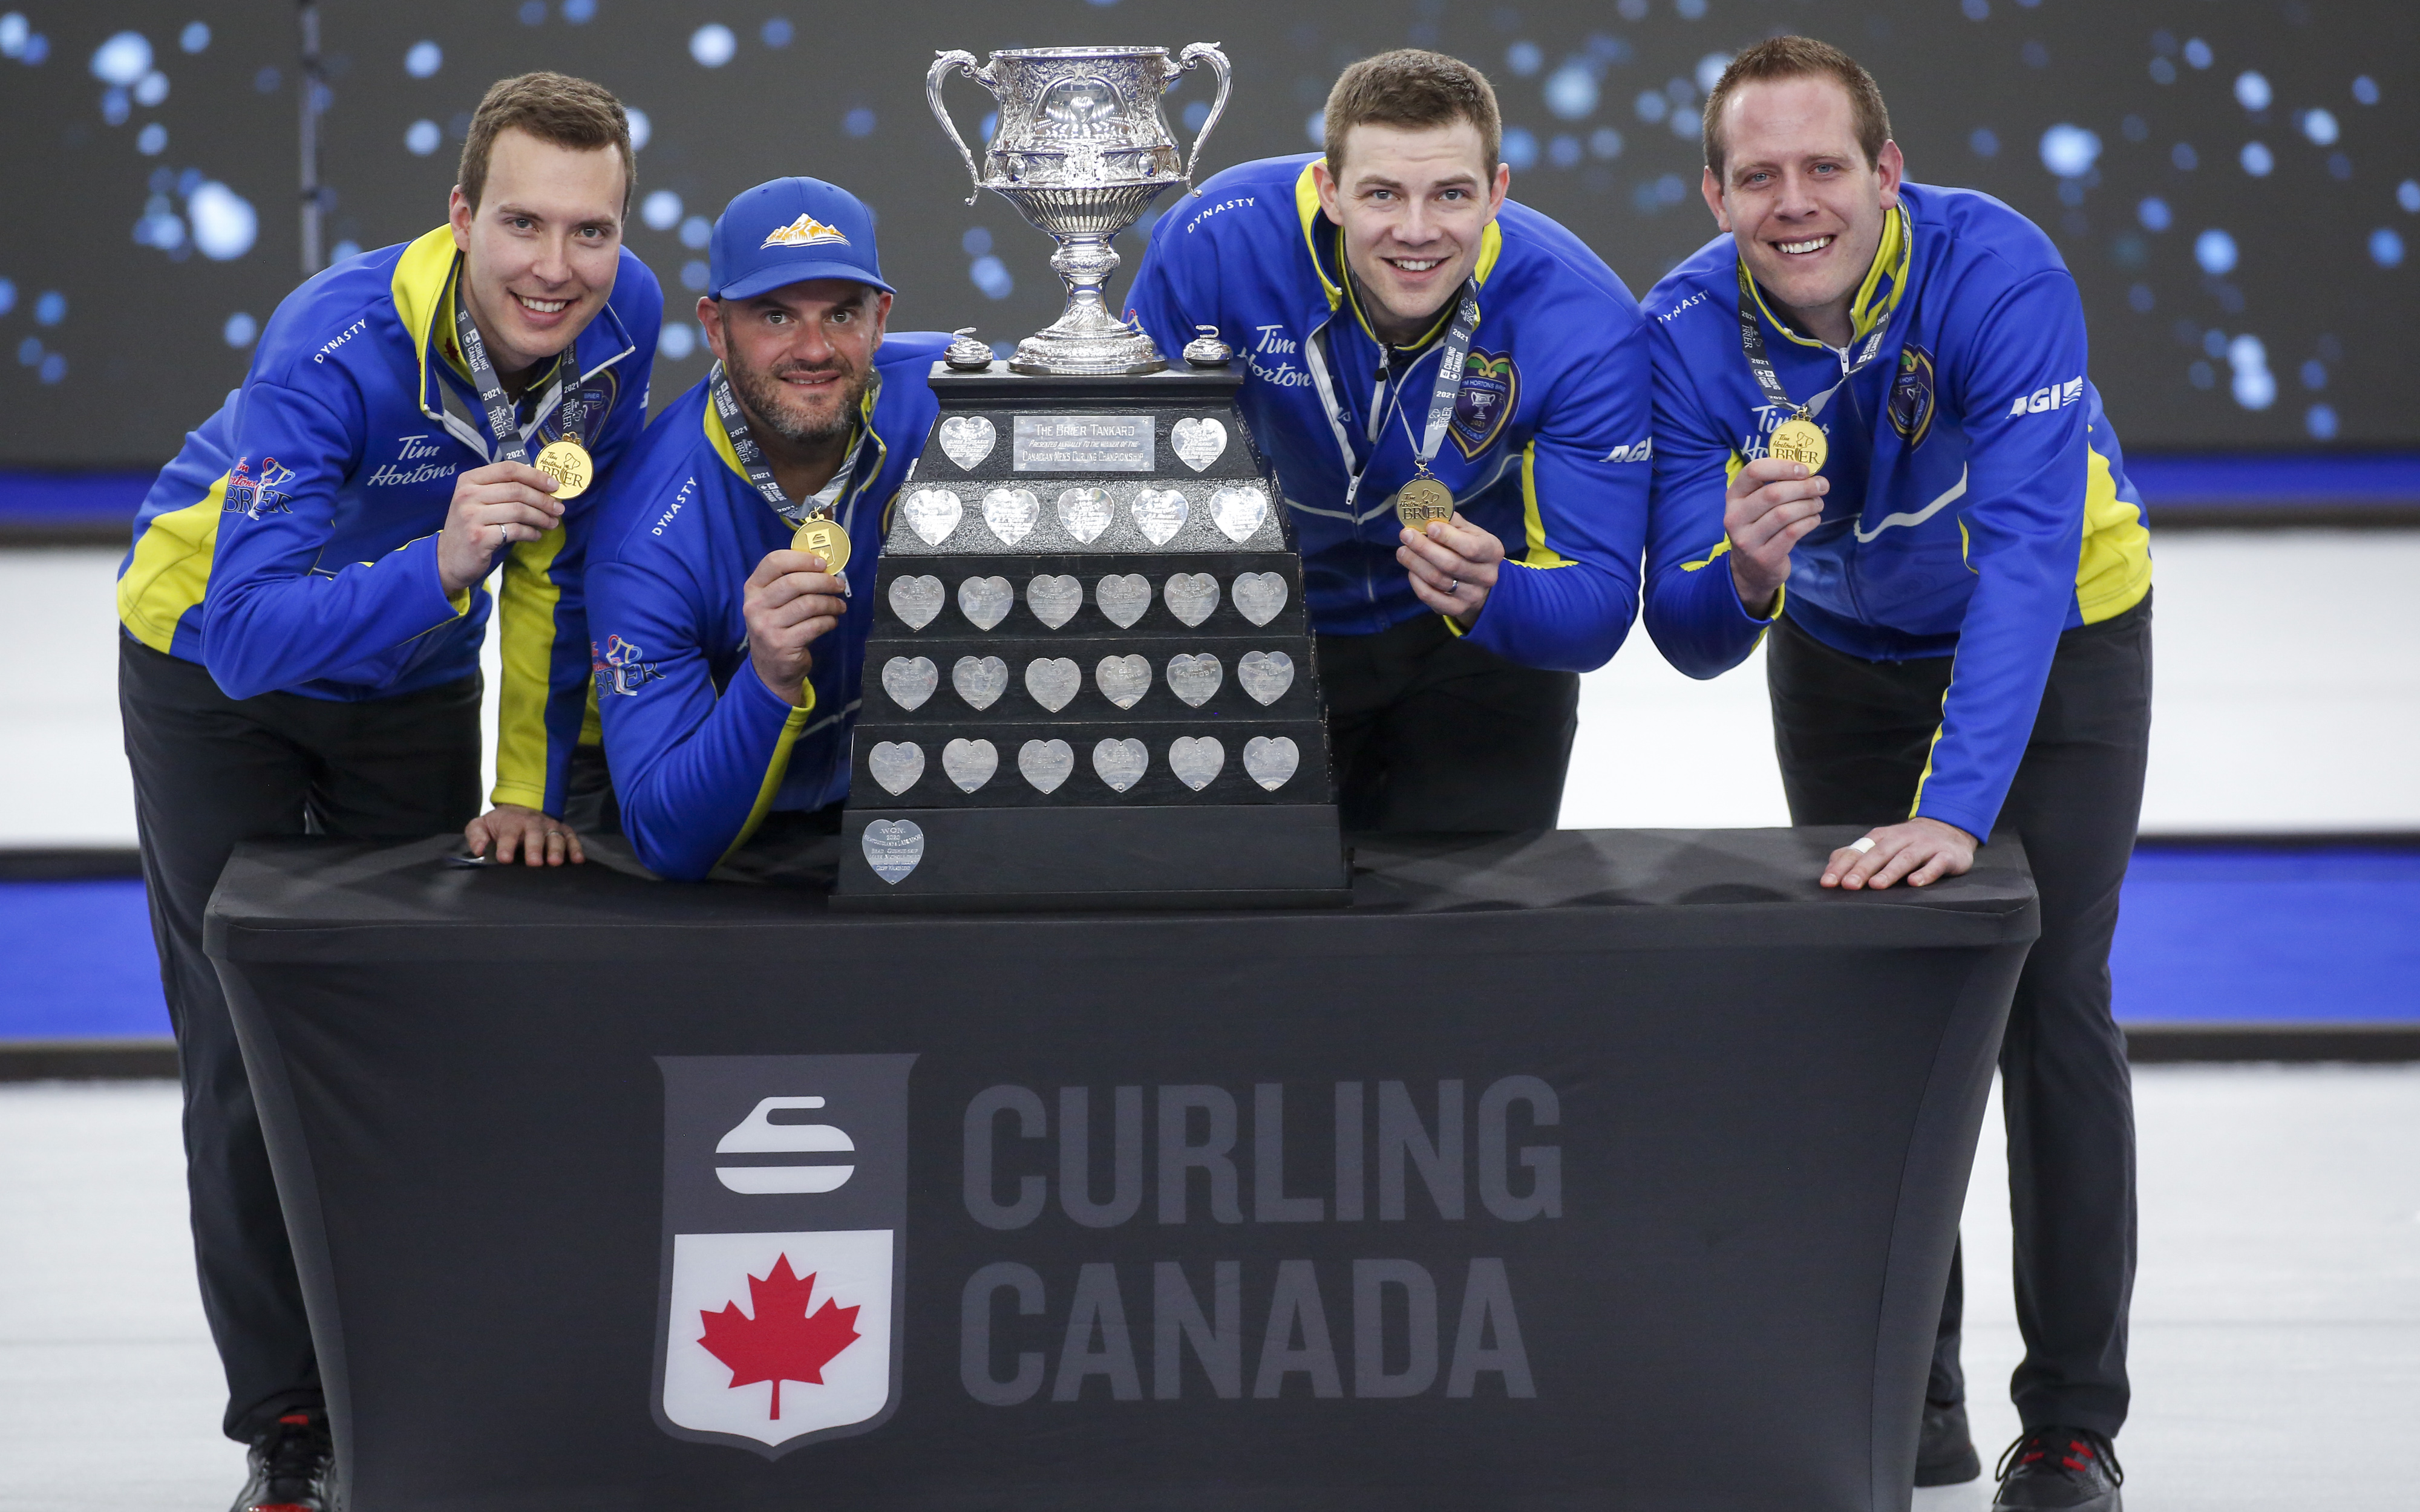 Equipe de Alberta, da esquerda para a direita, pule Brendan Bottcher, terceiro Darren Moldagem, segundo Brad Thiessen, levar Karrick Martin celebrar derrotar a Equipe de Wild Card Dois para ganhar o Brier curling final em Calgary, Alta., Domingo, 14 De Março De 2021.